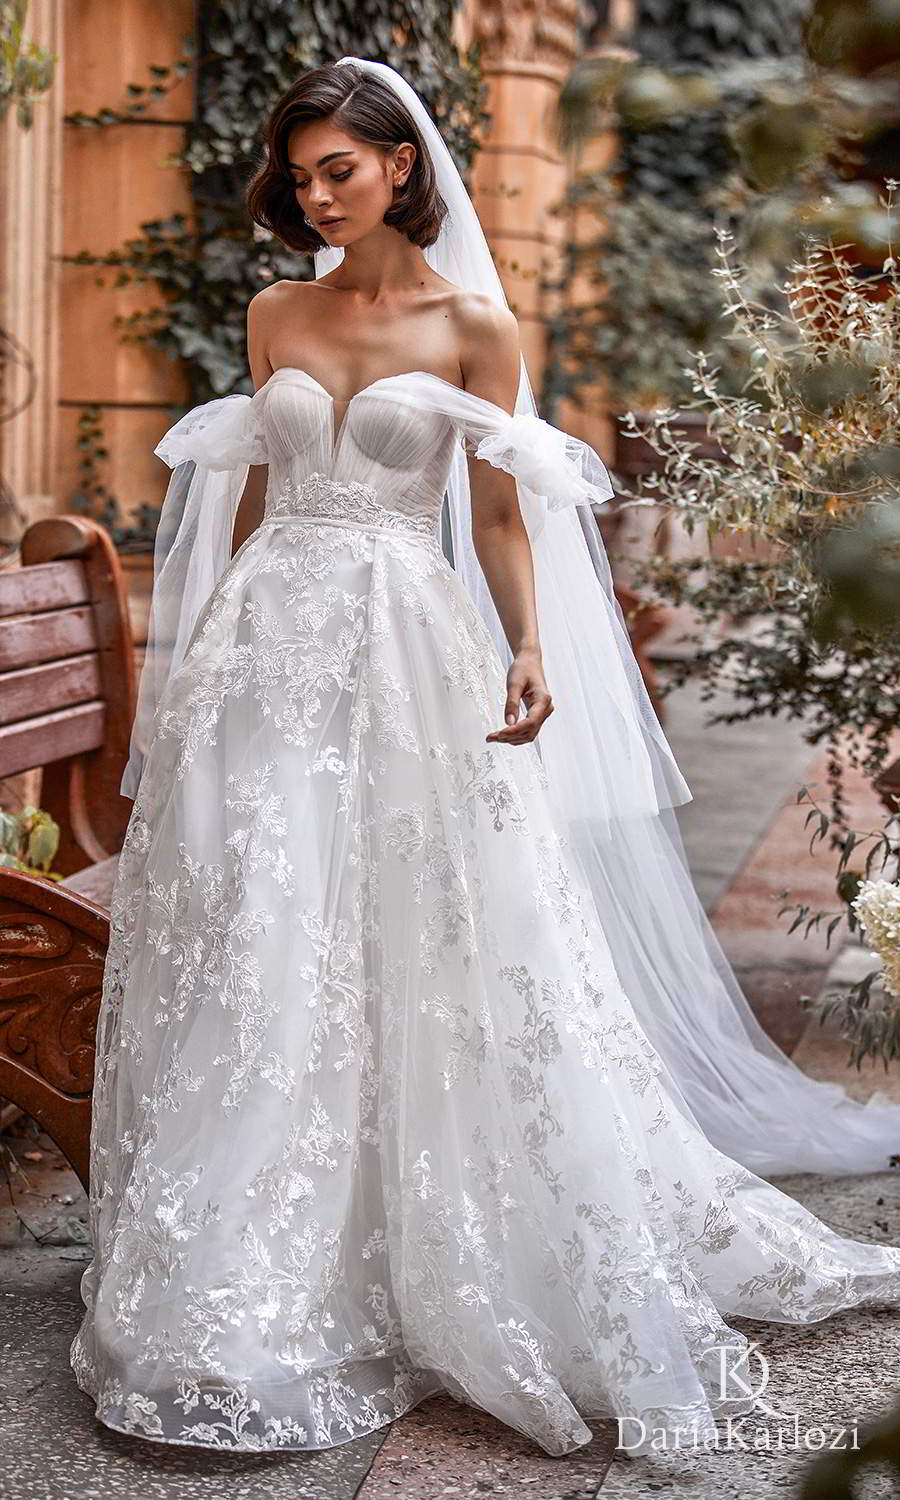 Daria Karlozi 2021 “Graceful Dream” Wedding Dresses